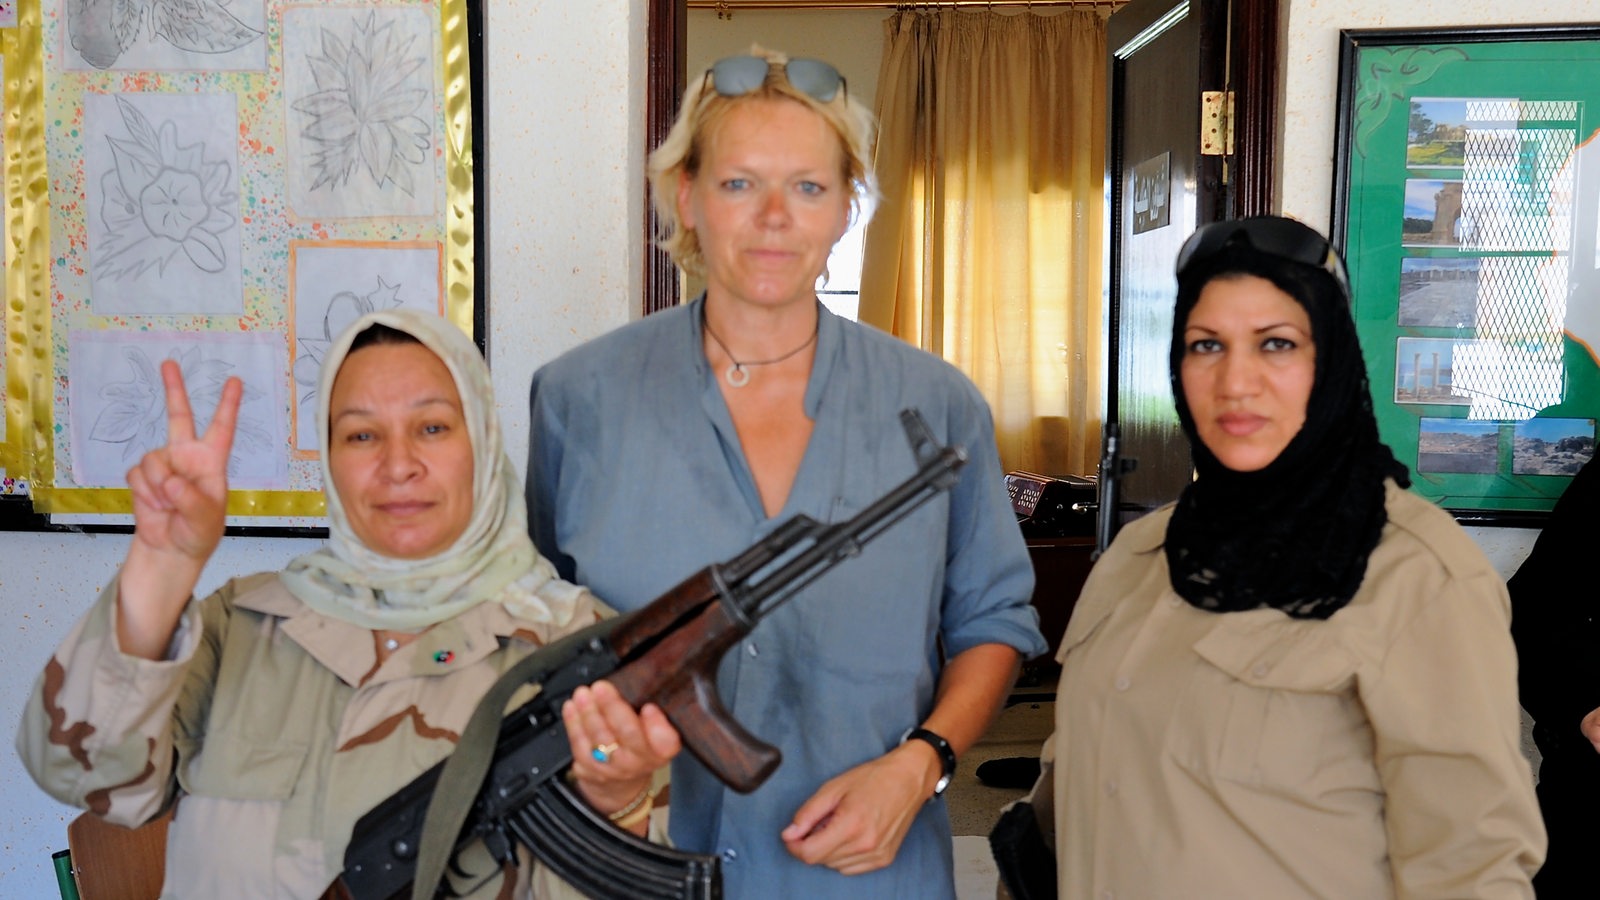 Eine große blonde Frau zwischen zwei dunkelhaarigen Frauen mit Kopftuch. Eine der Frauen trägt ein Gewehr.